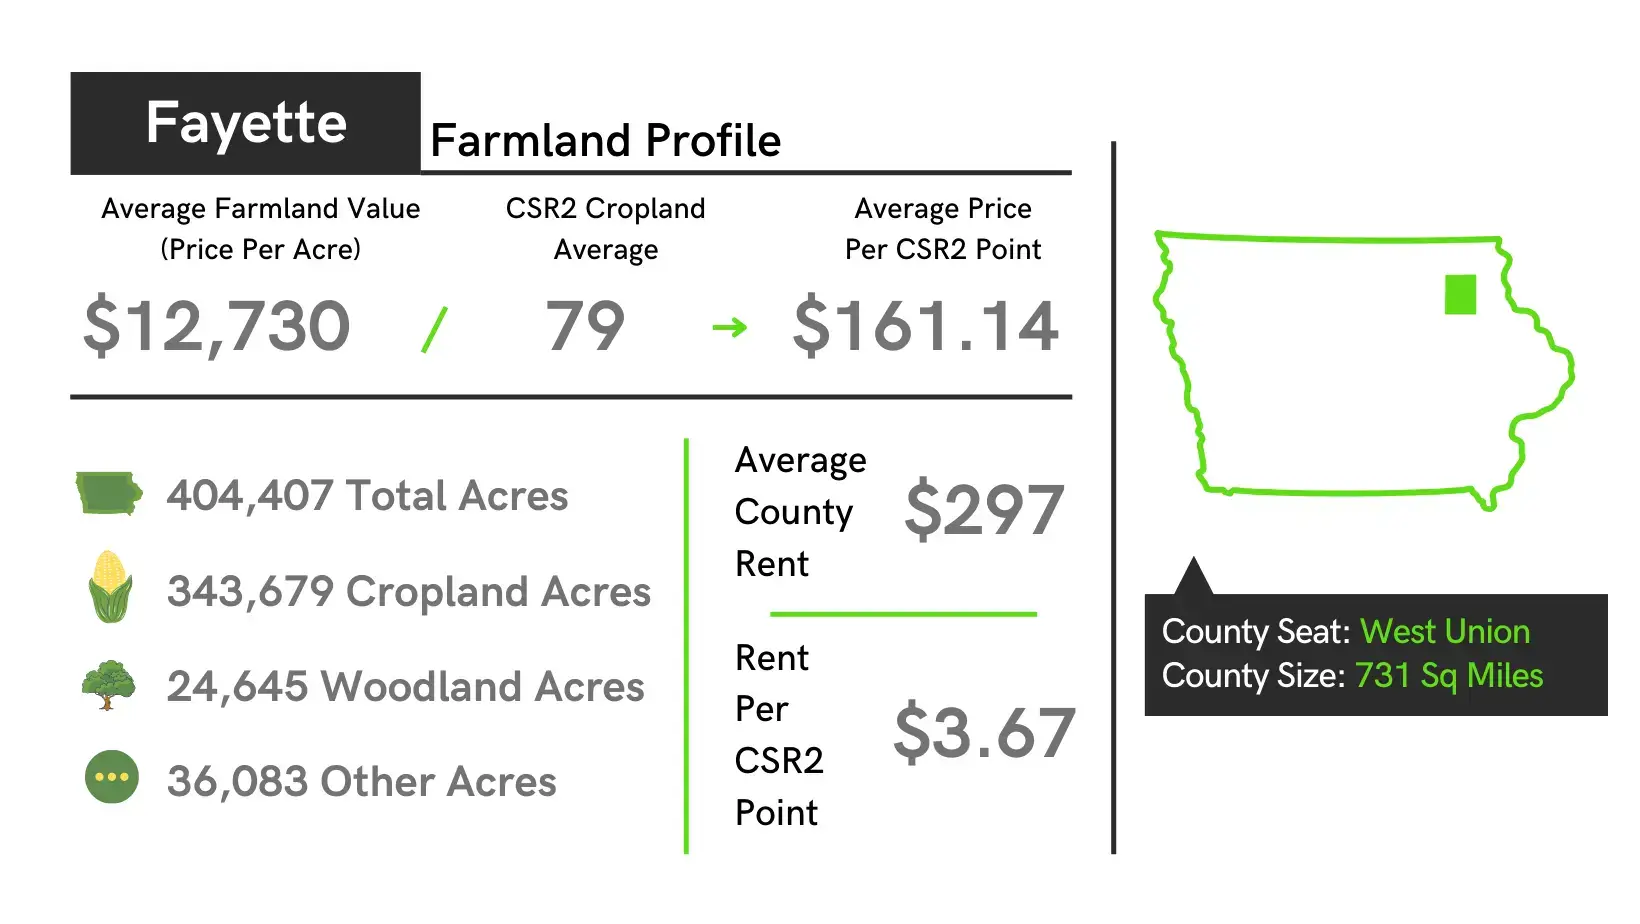 Fayette County Farmland Profile